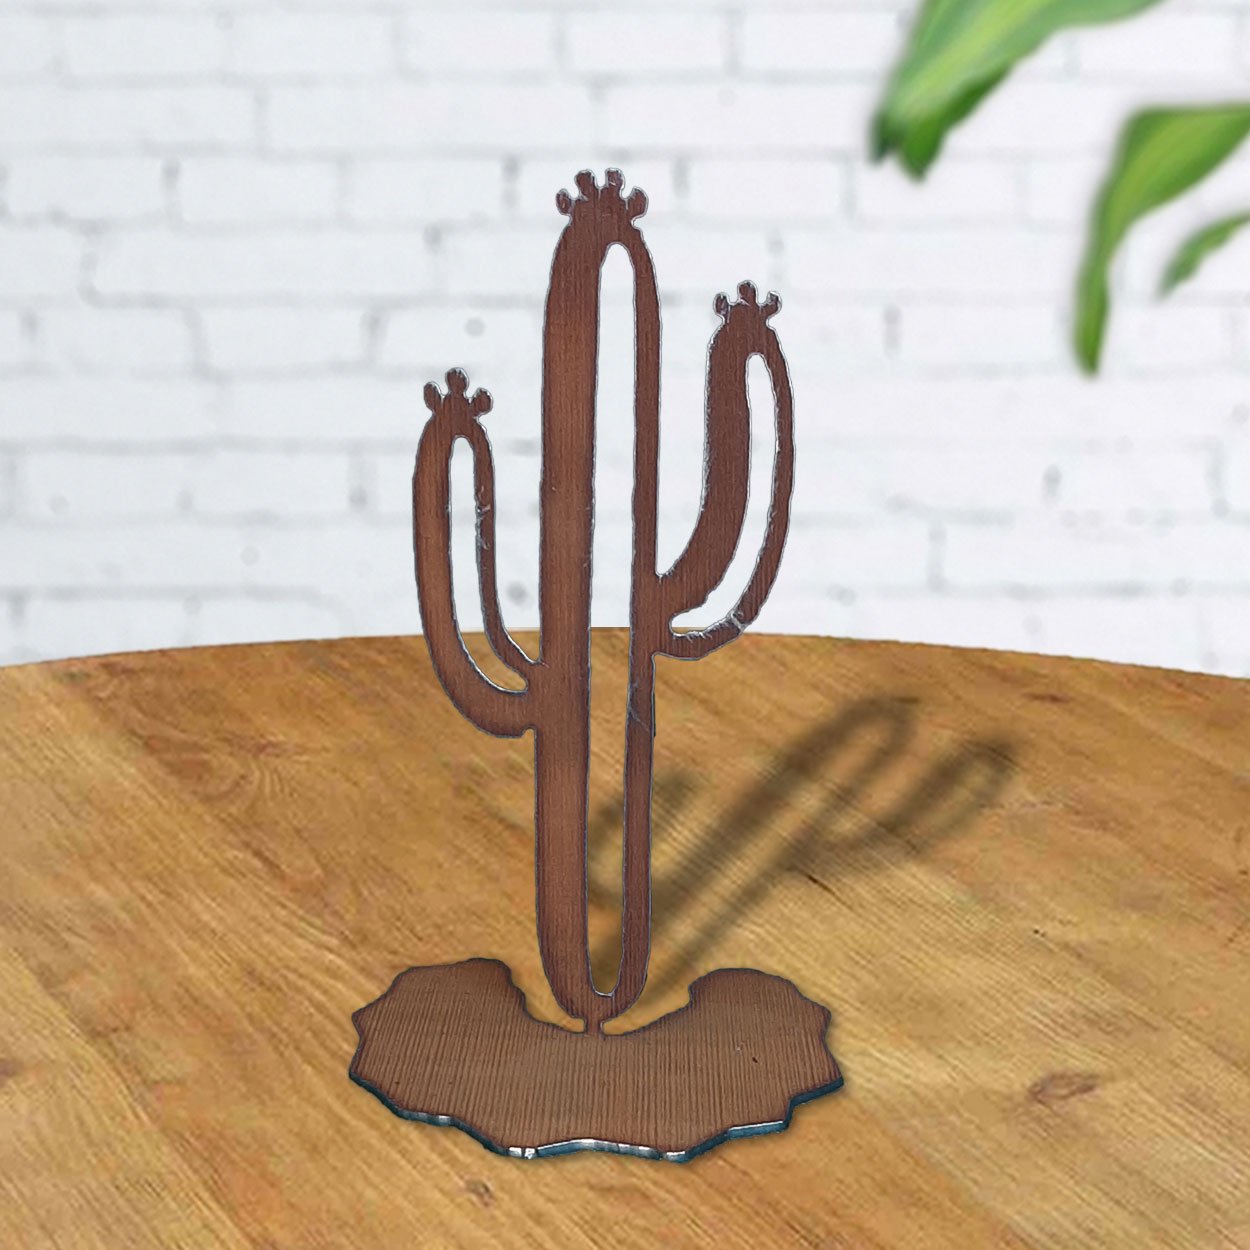 165901 - 7in Rustic Metal Table Top Sculpture - Saguaro Cactus